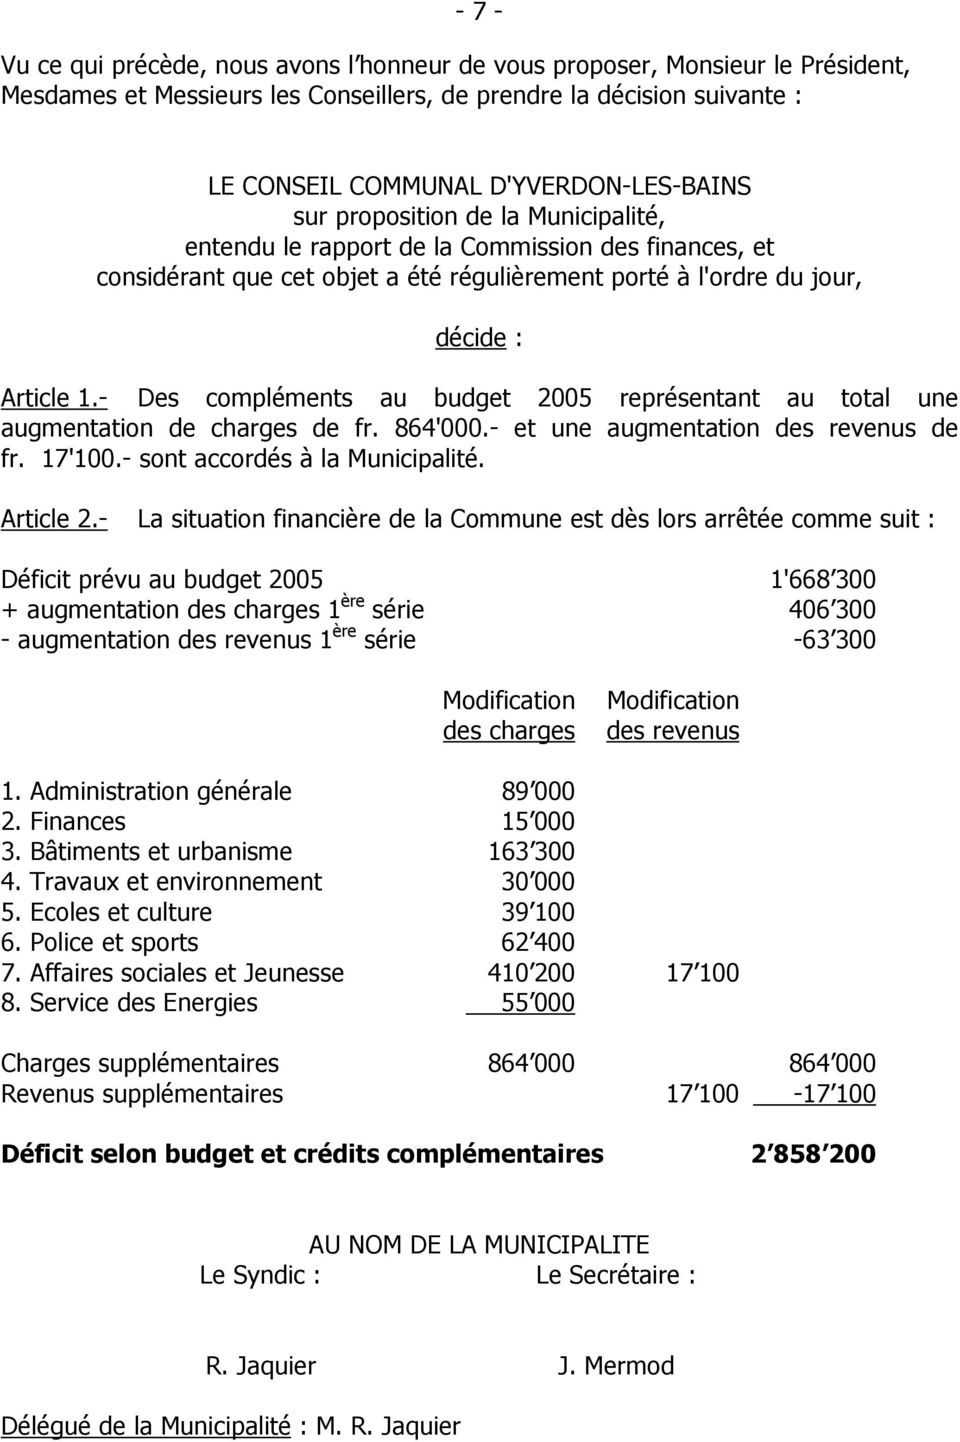 - Des compléments au budget 2005 représentant au total une augmentation de charges de fr. 864'000.- et une augmentation des revenus de fr. 17'100.- sont accordés à la Municipalité. Article 2.